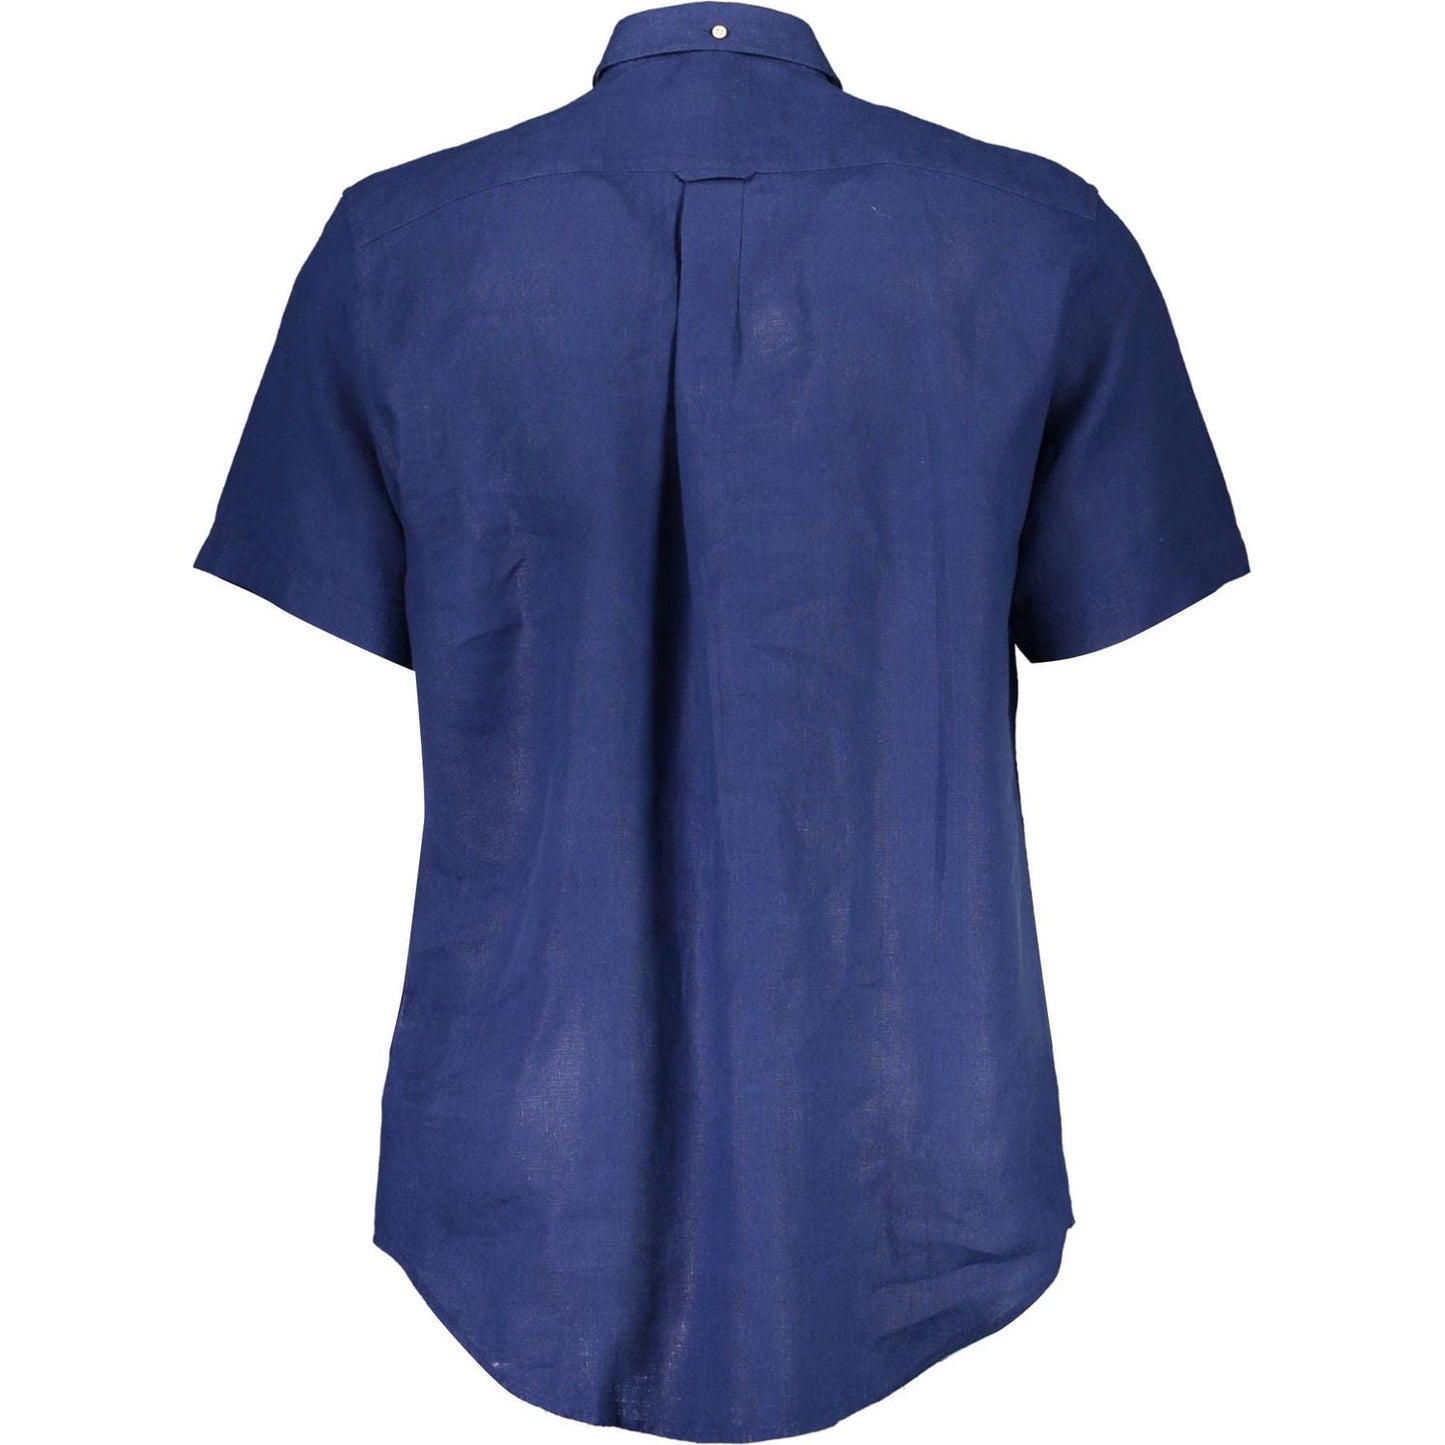 Elegant Blue Linen Button-Down Shirt